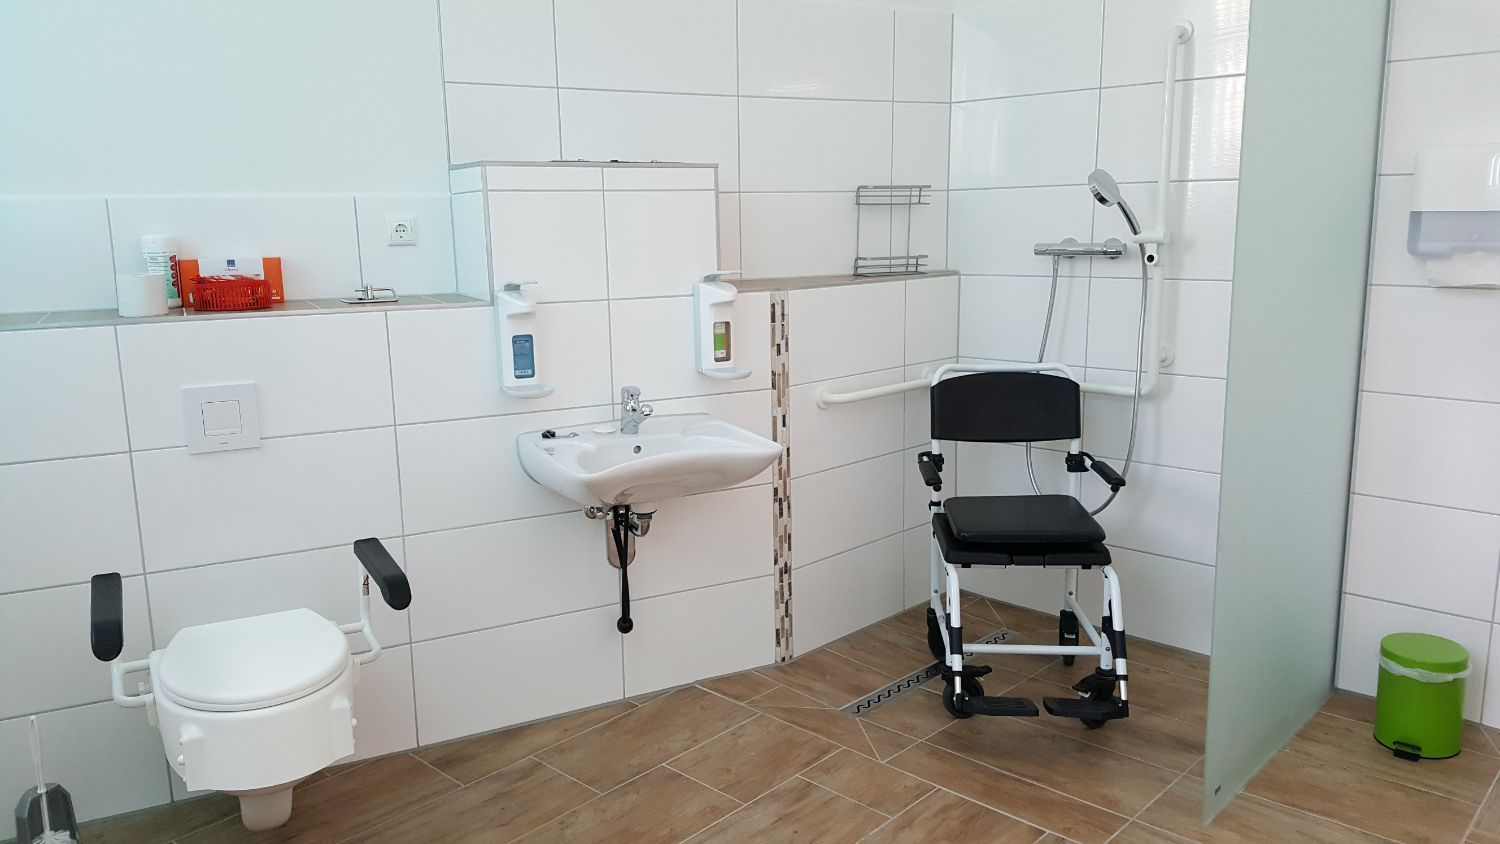 Barrierefreies Badezimmer der Tagespflege der Contentus GmbH